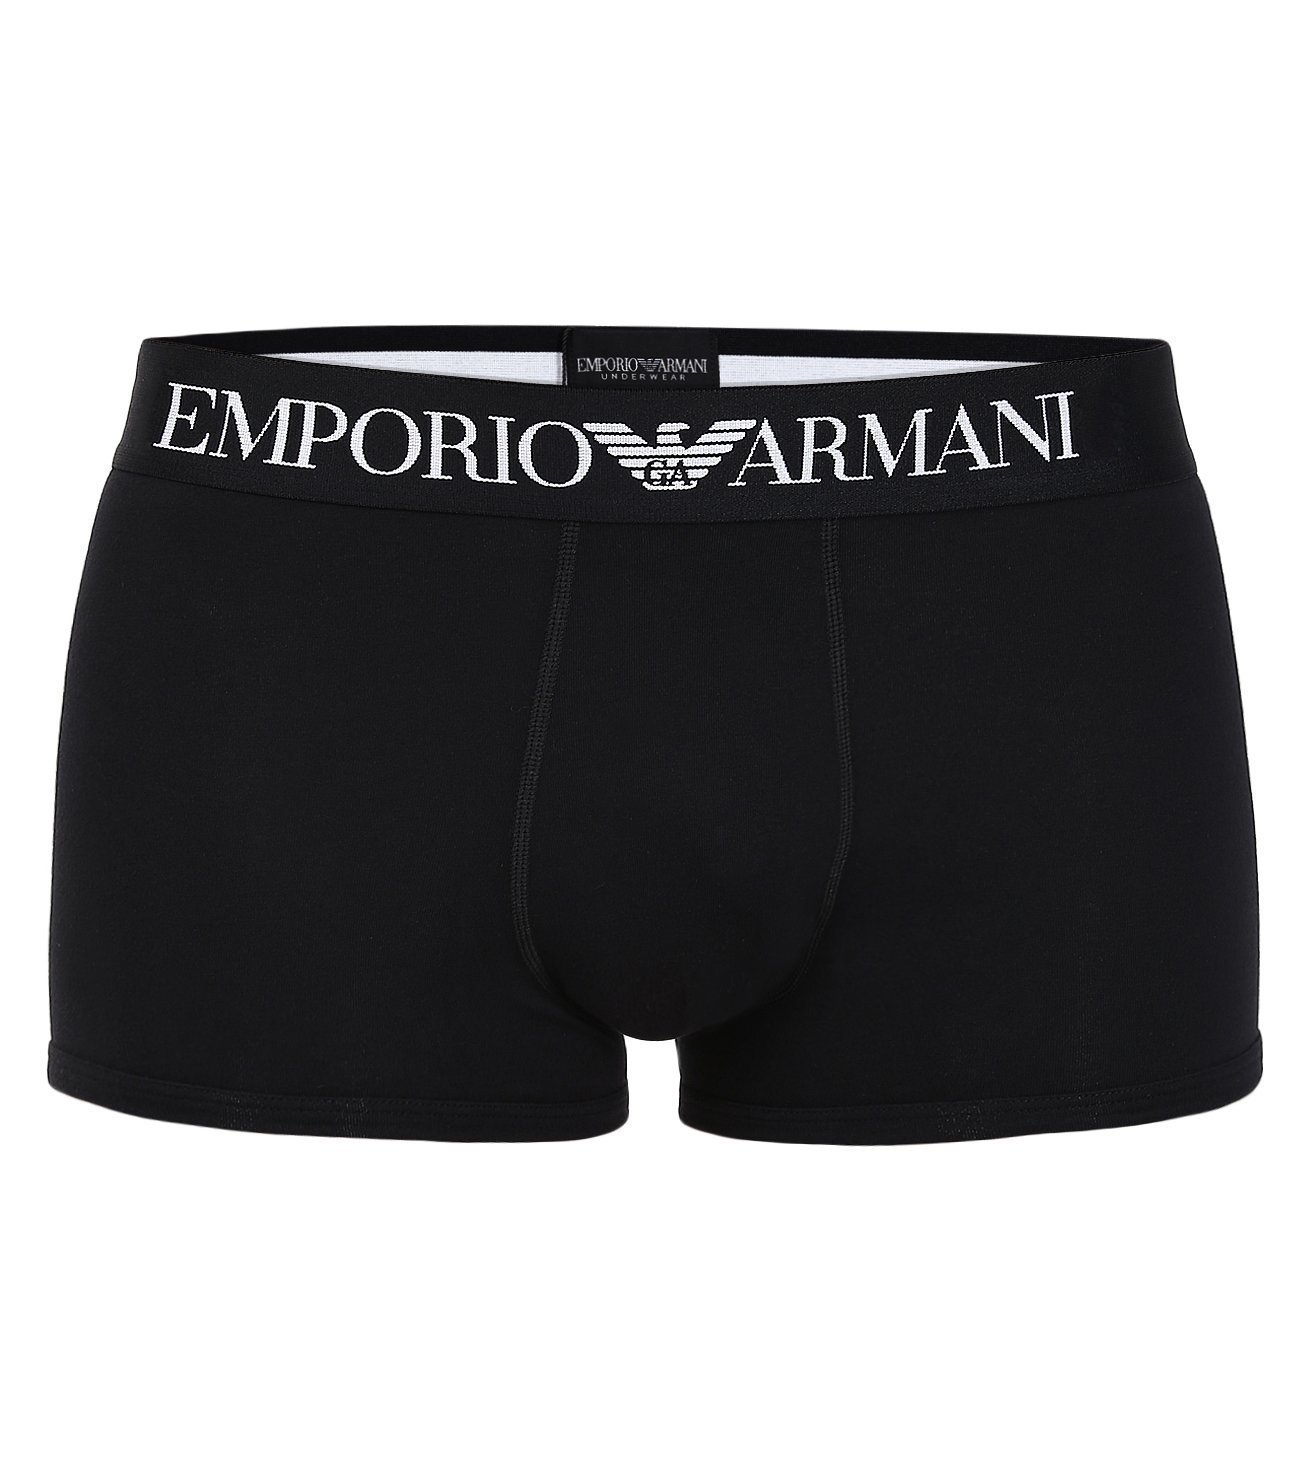 emporio armani underwear price